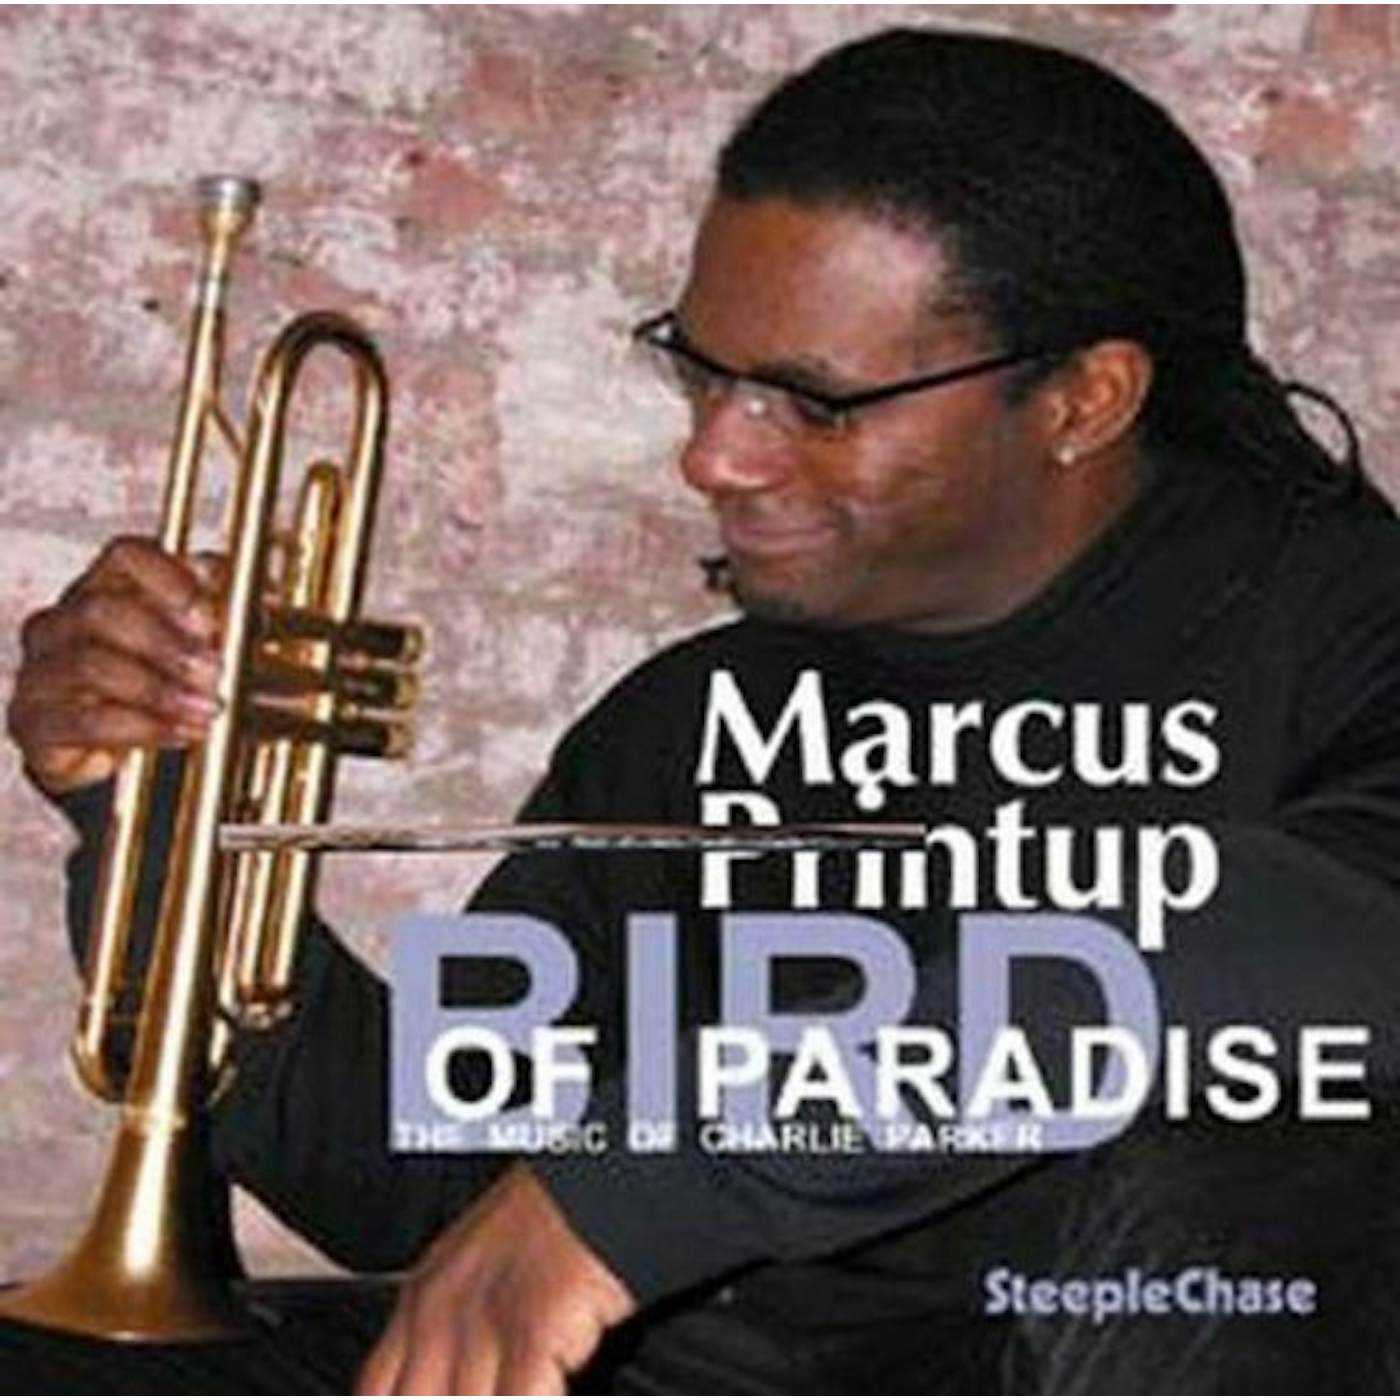 Marcus Printup BIRD OF PARADISE CD